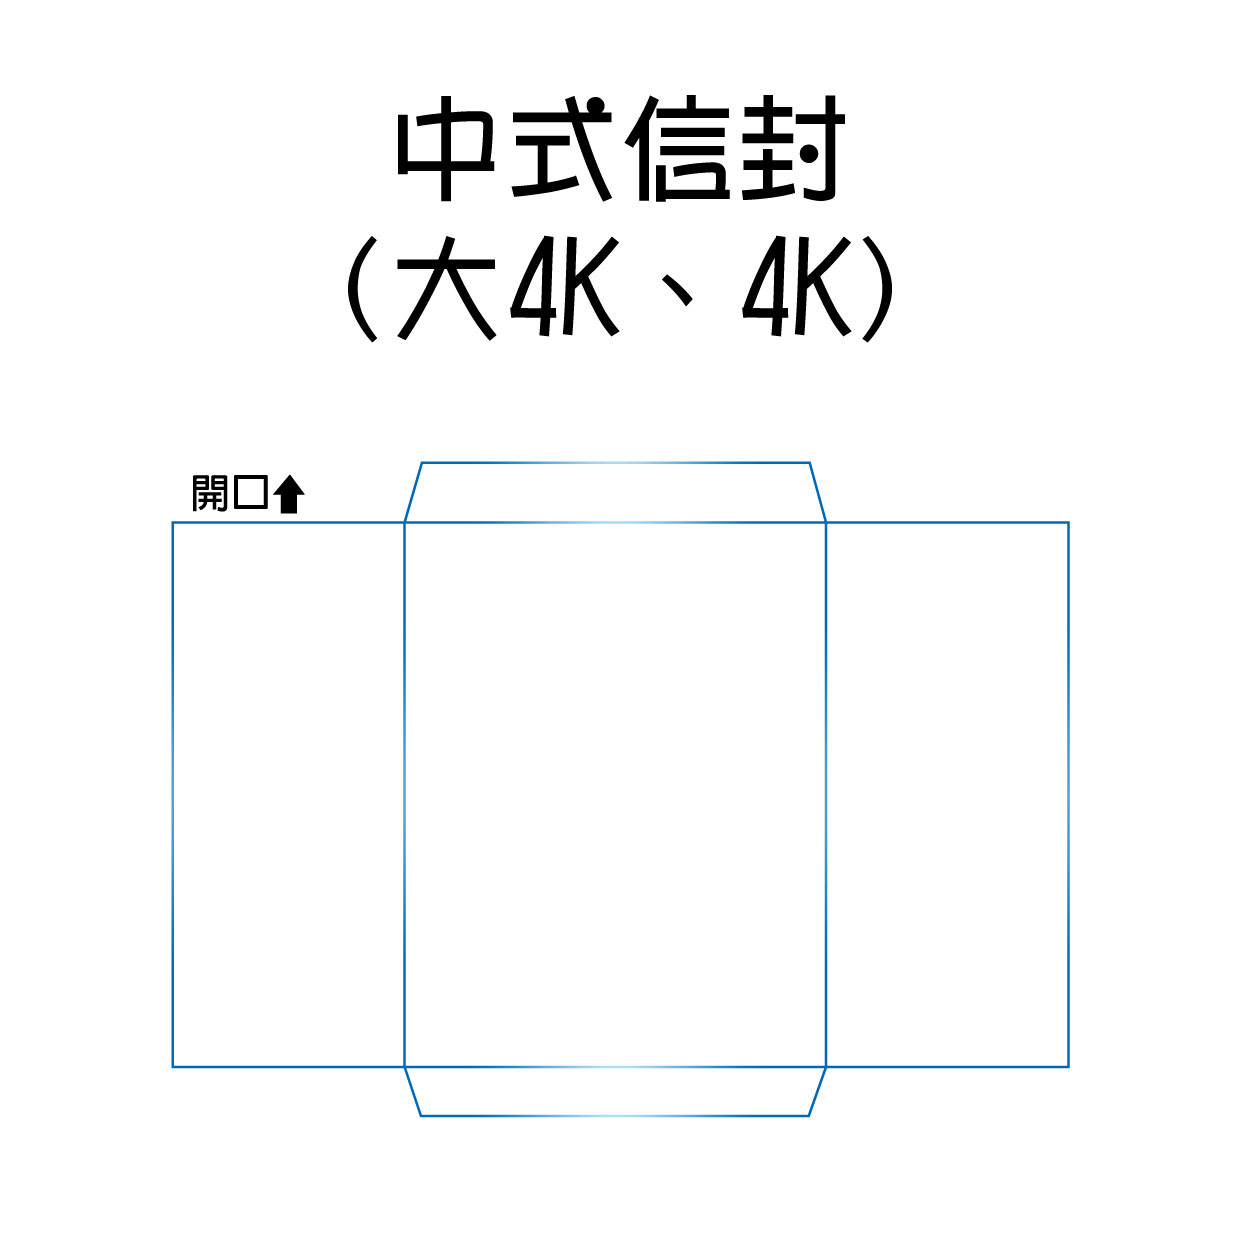 中式信封(大4K、4K)